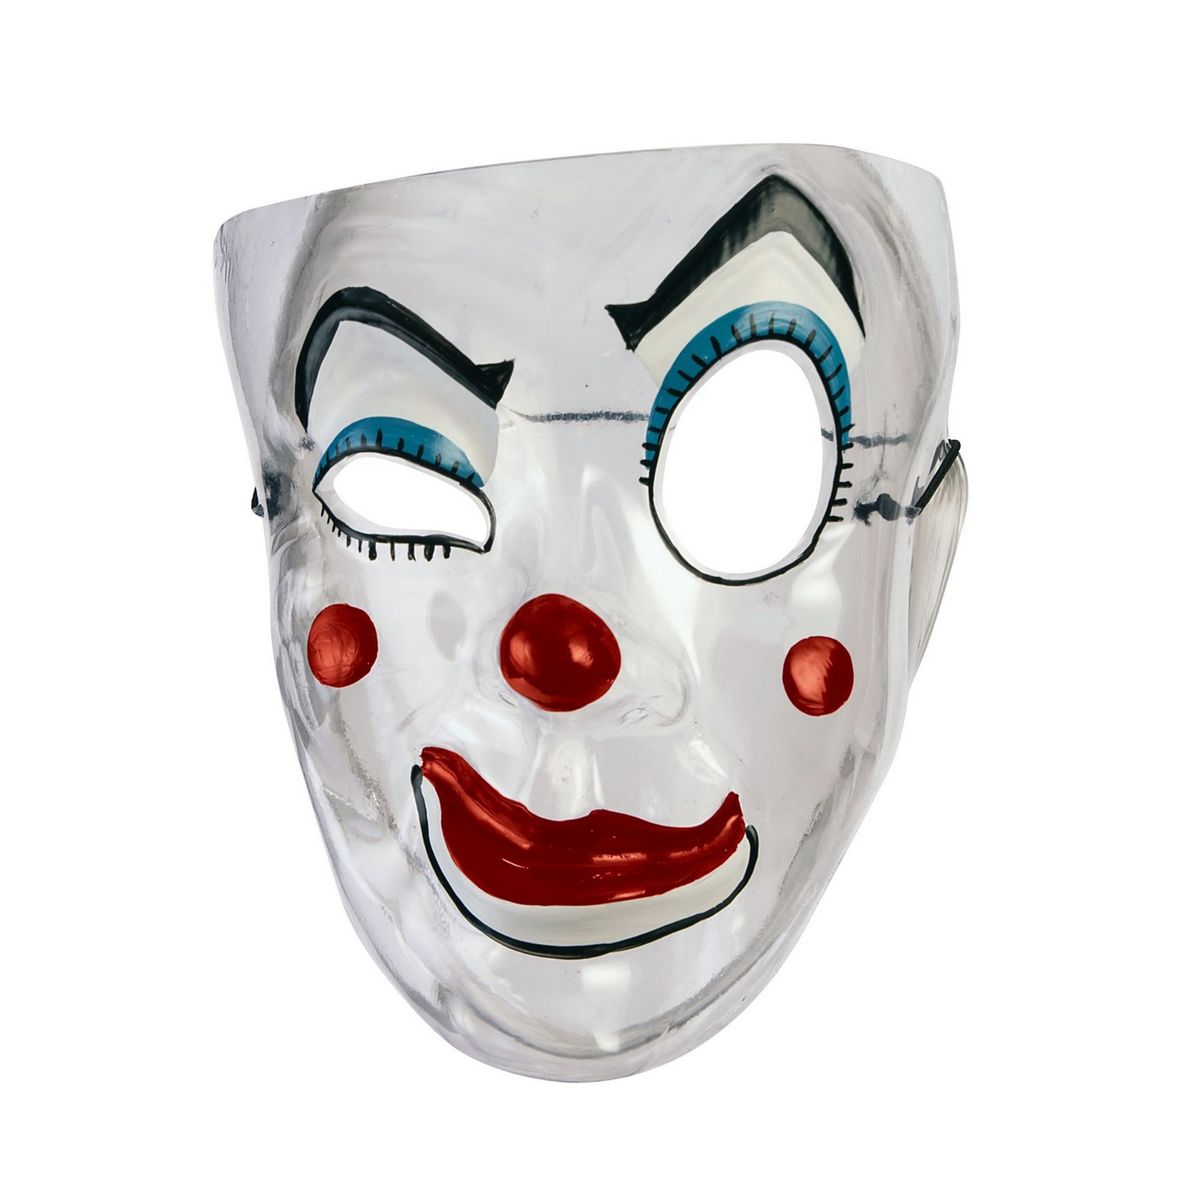 送料無料 透明なマスク ピエロ アクセサリー Halloween ハロウィン コスチューム コスプレ 衣装 仮装 楽天海外通販 Transparent Mask Clown Costume Accessory